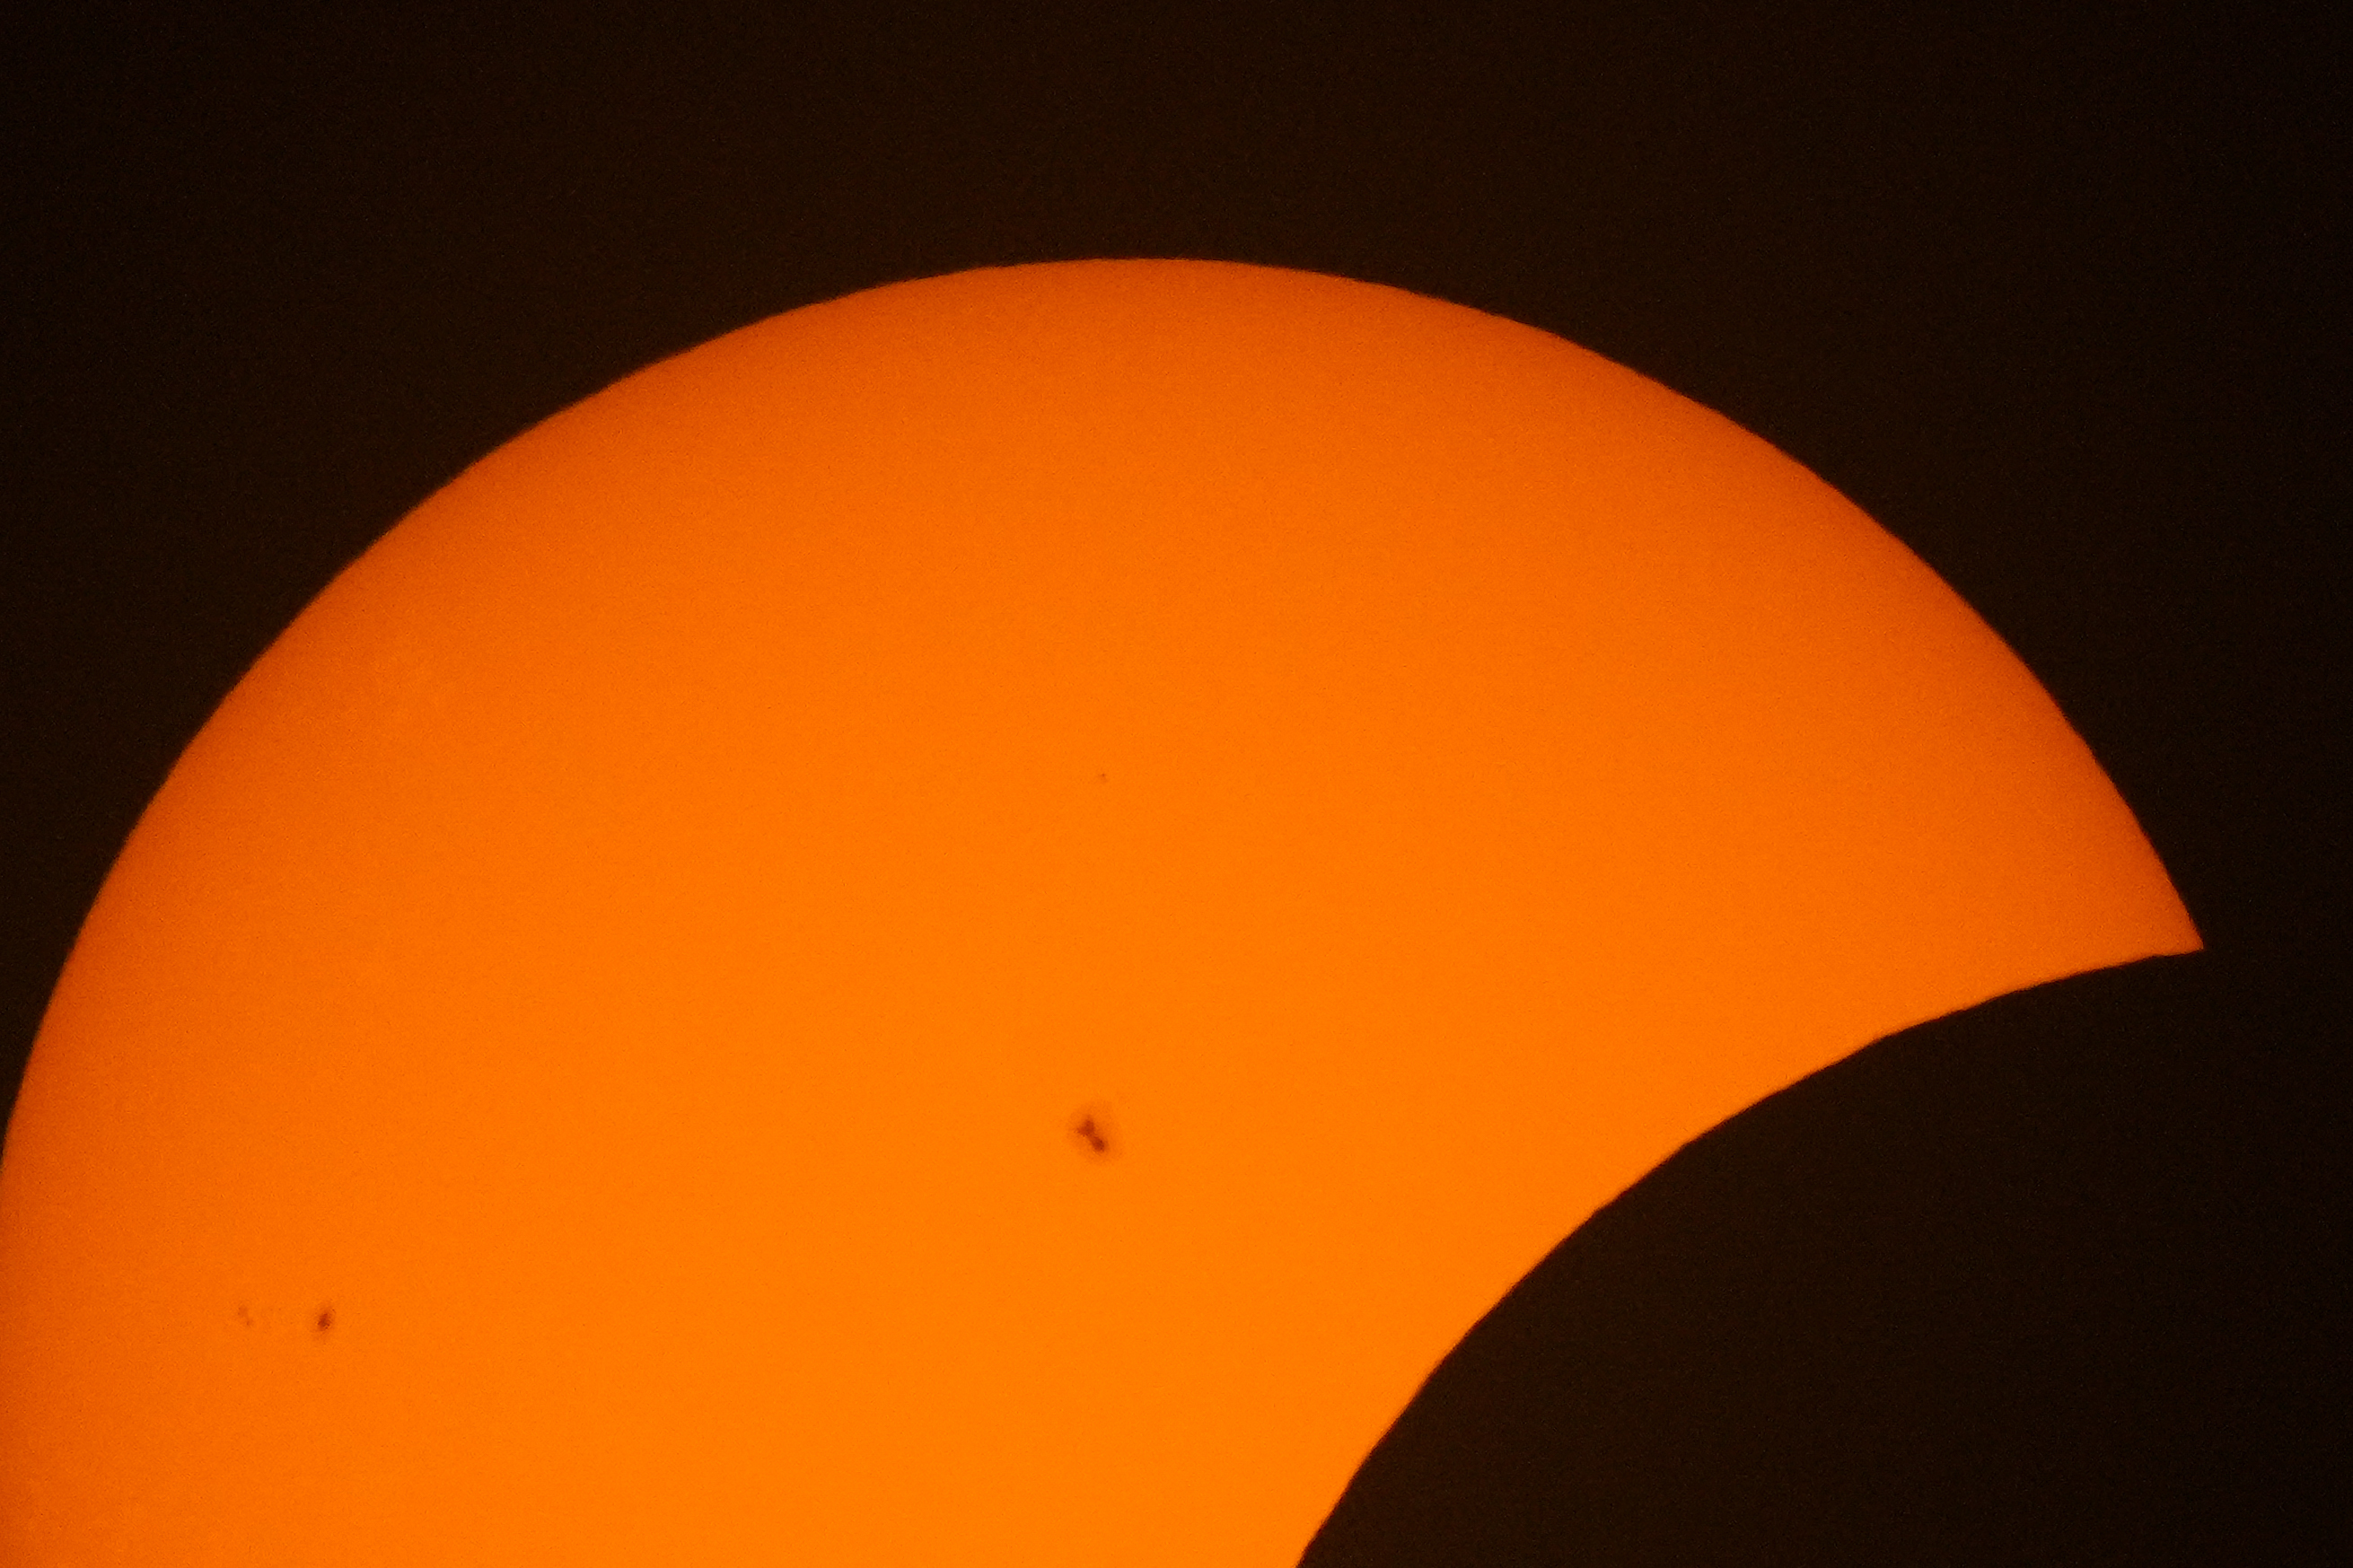 Eclipse solar en Mazatlán: Más de 750 mil visitantes y científicos de la NASA entre los privilegiados